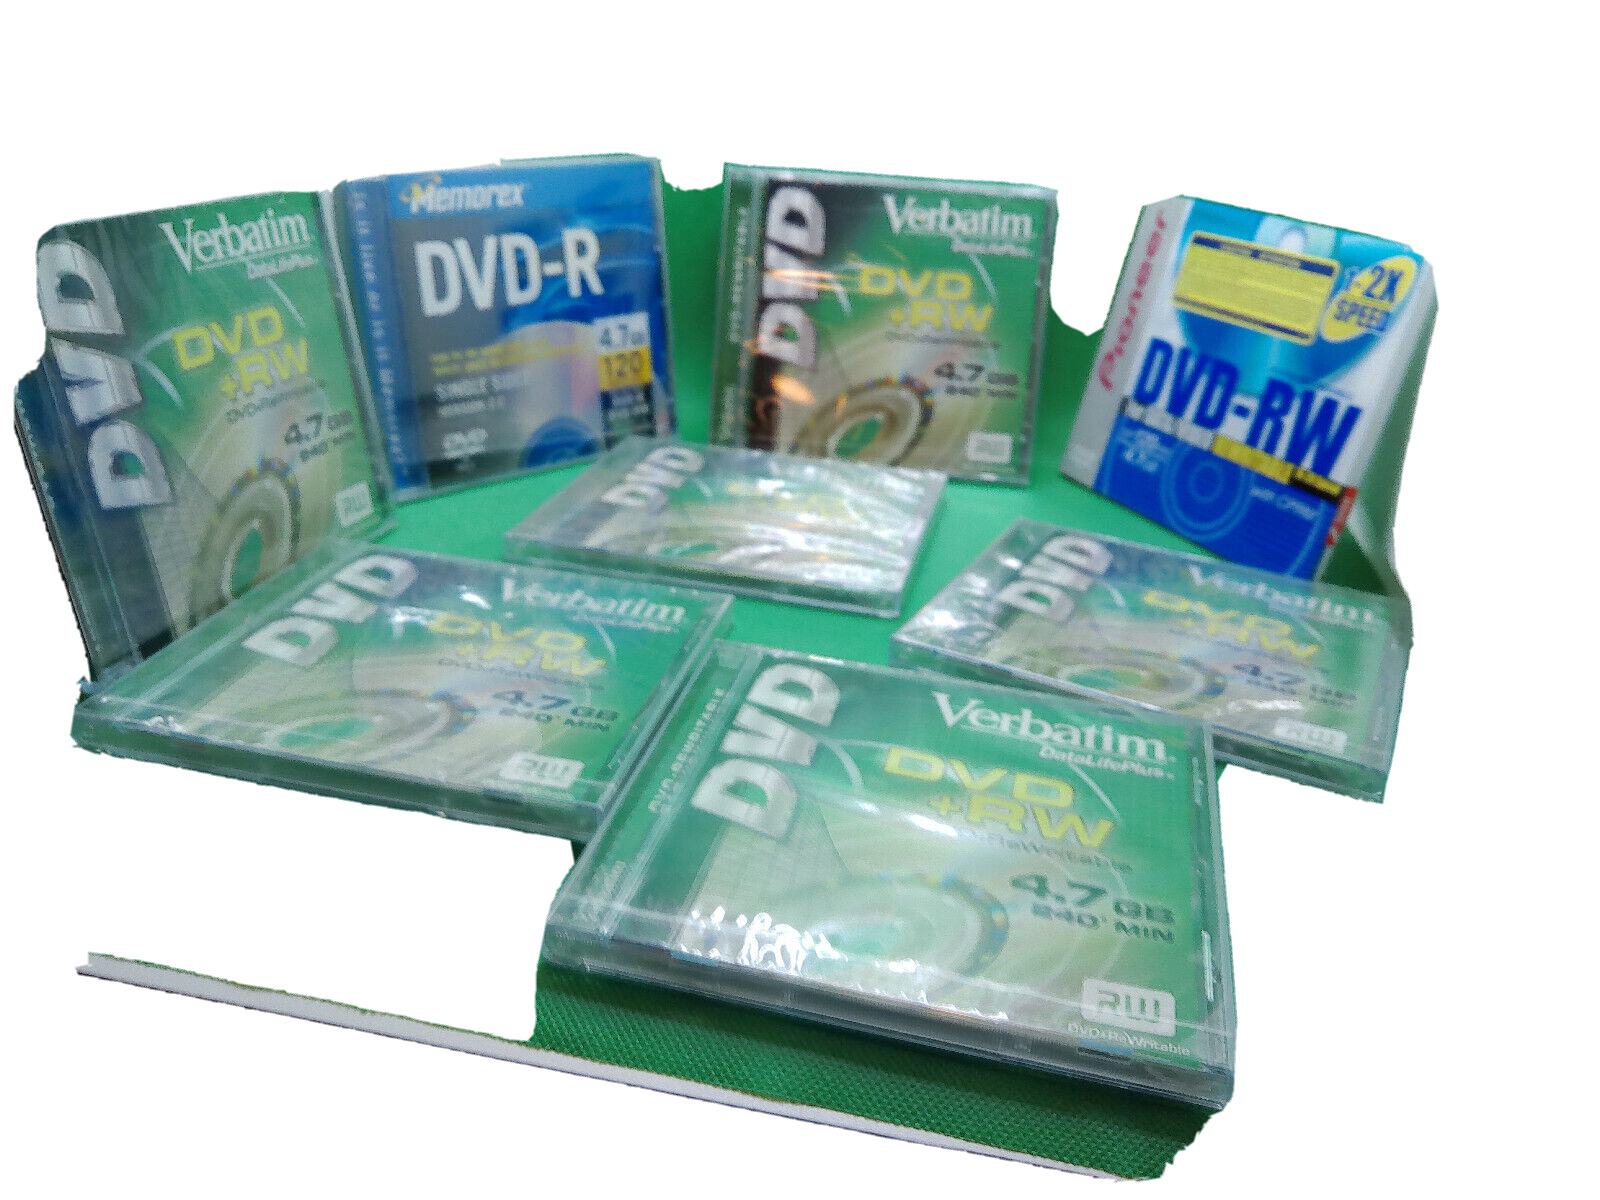 Memorex Verbatim Pioneer 8 pack CD-R 4.7 GB 120 240 minutes NOS sealed